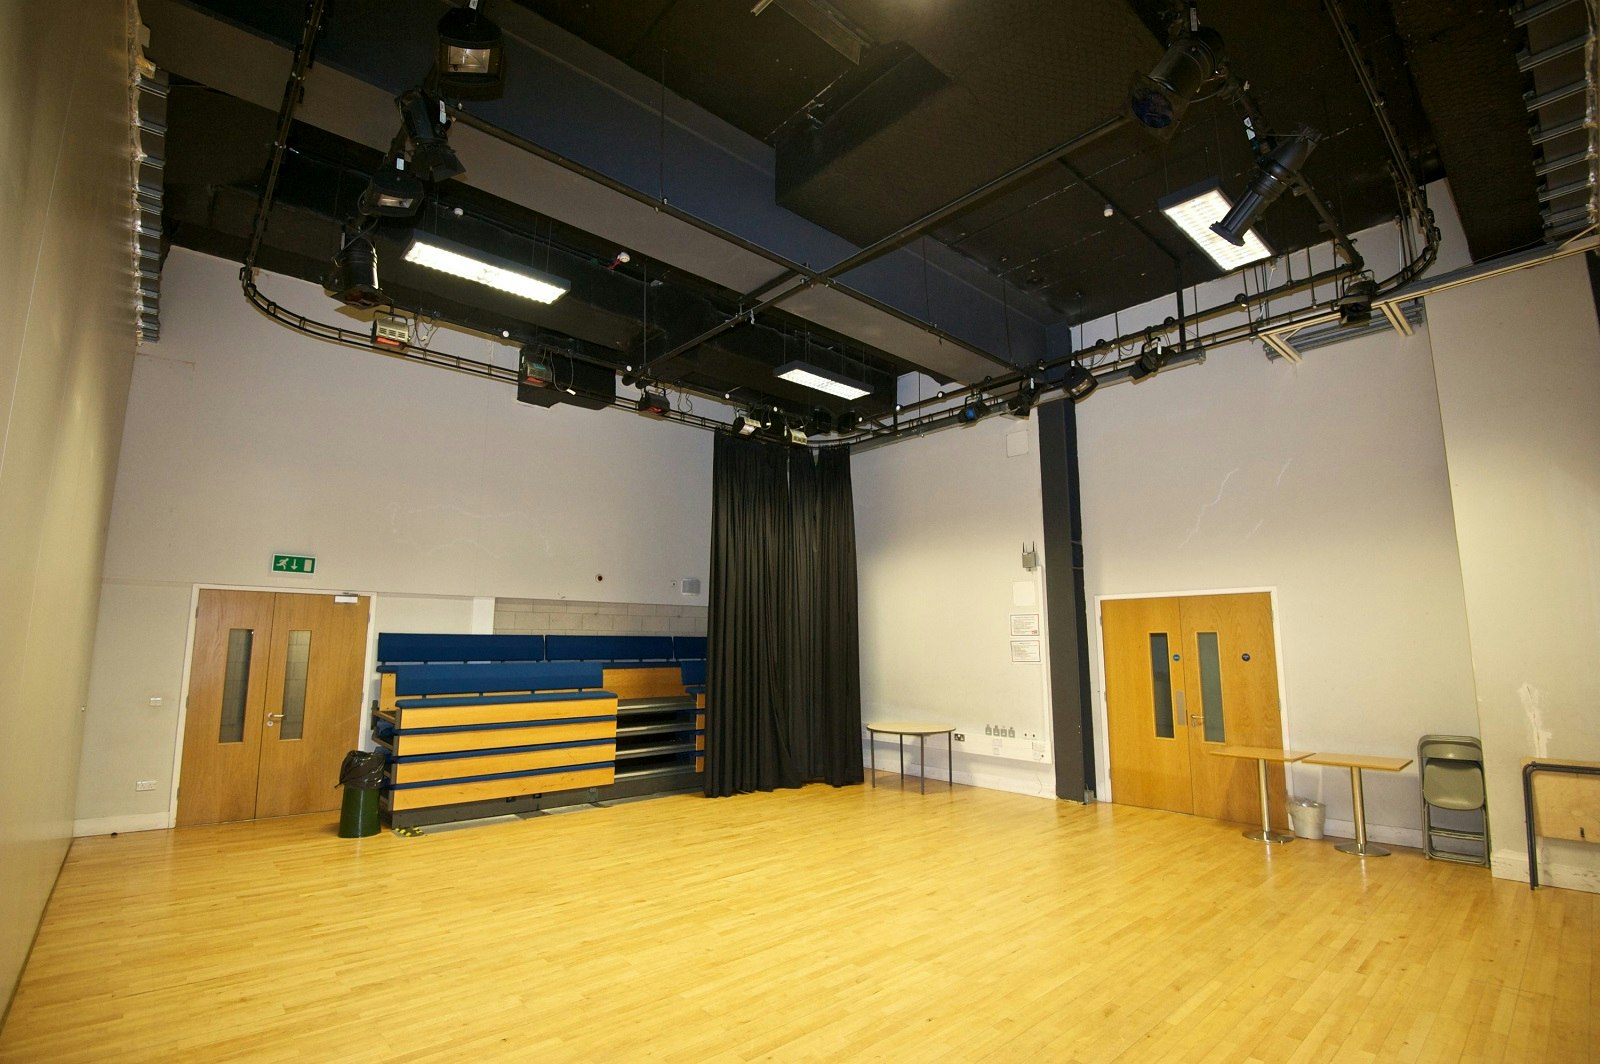 Dance Studio Venues in London - Haverstock School